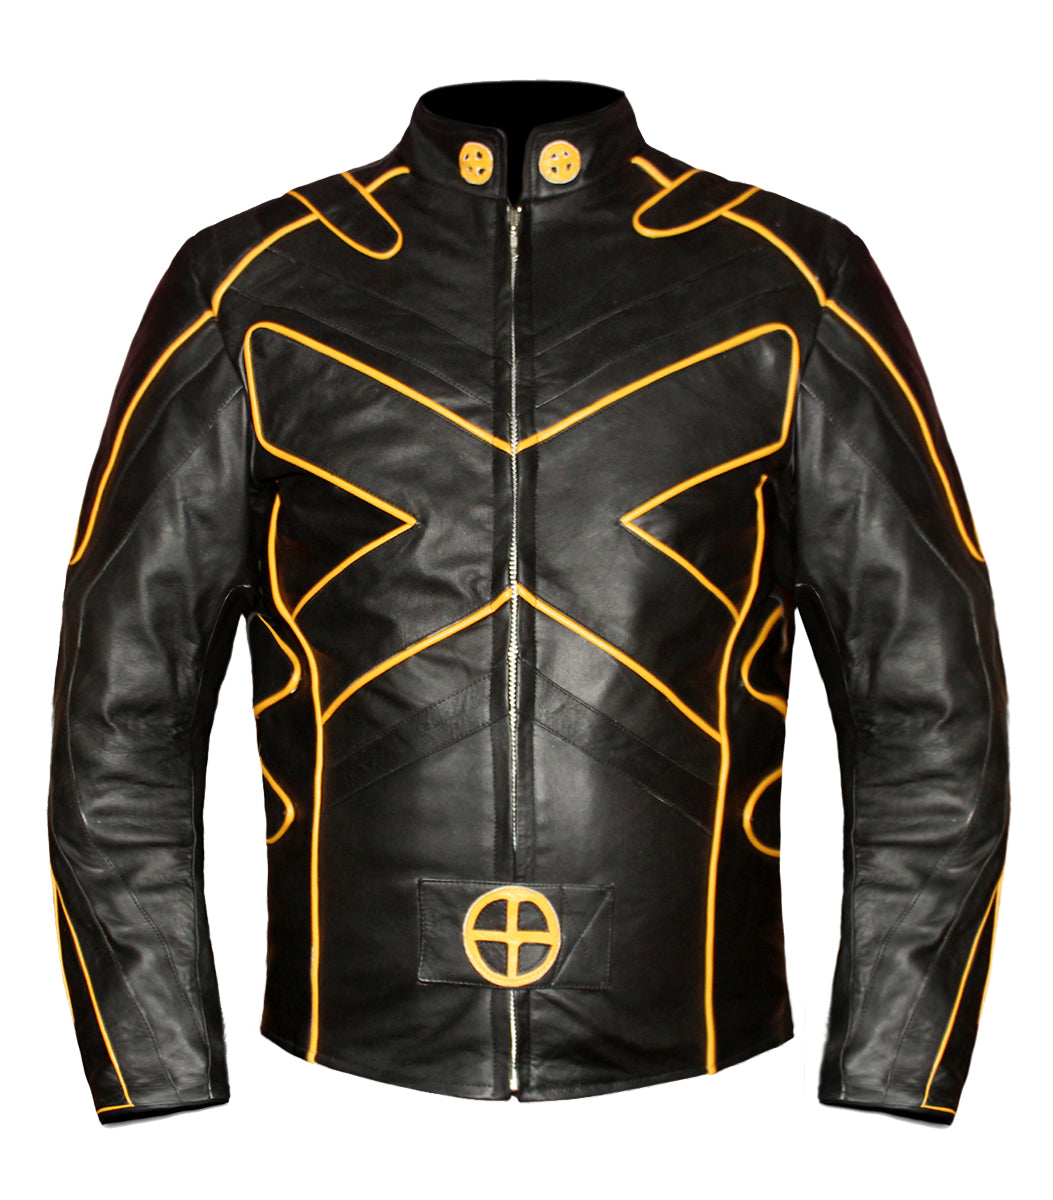 Men's Stylish Superb Real Genuine Leather Bomber Biker Jacket #551-LE